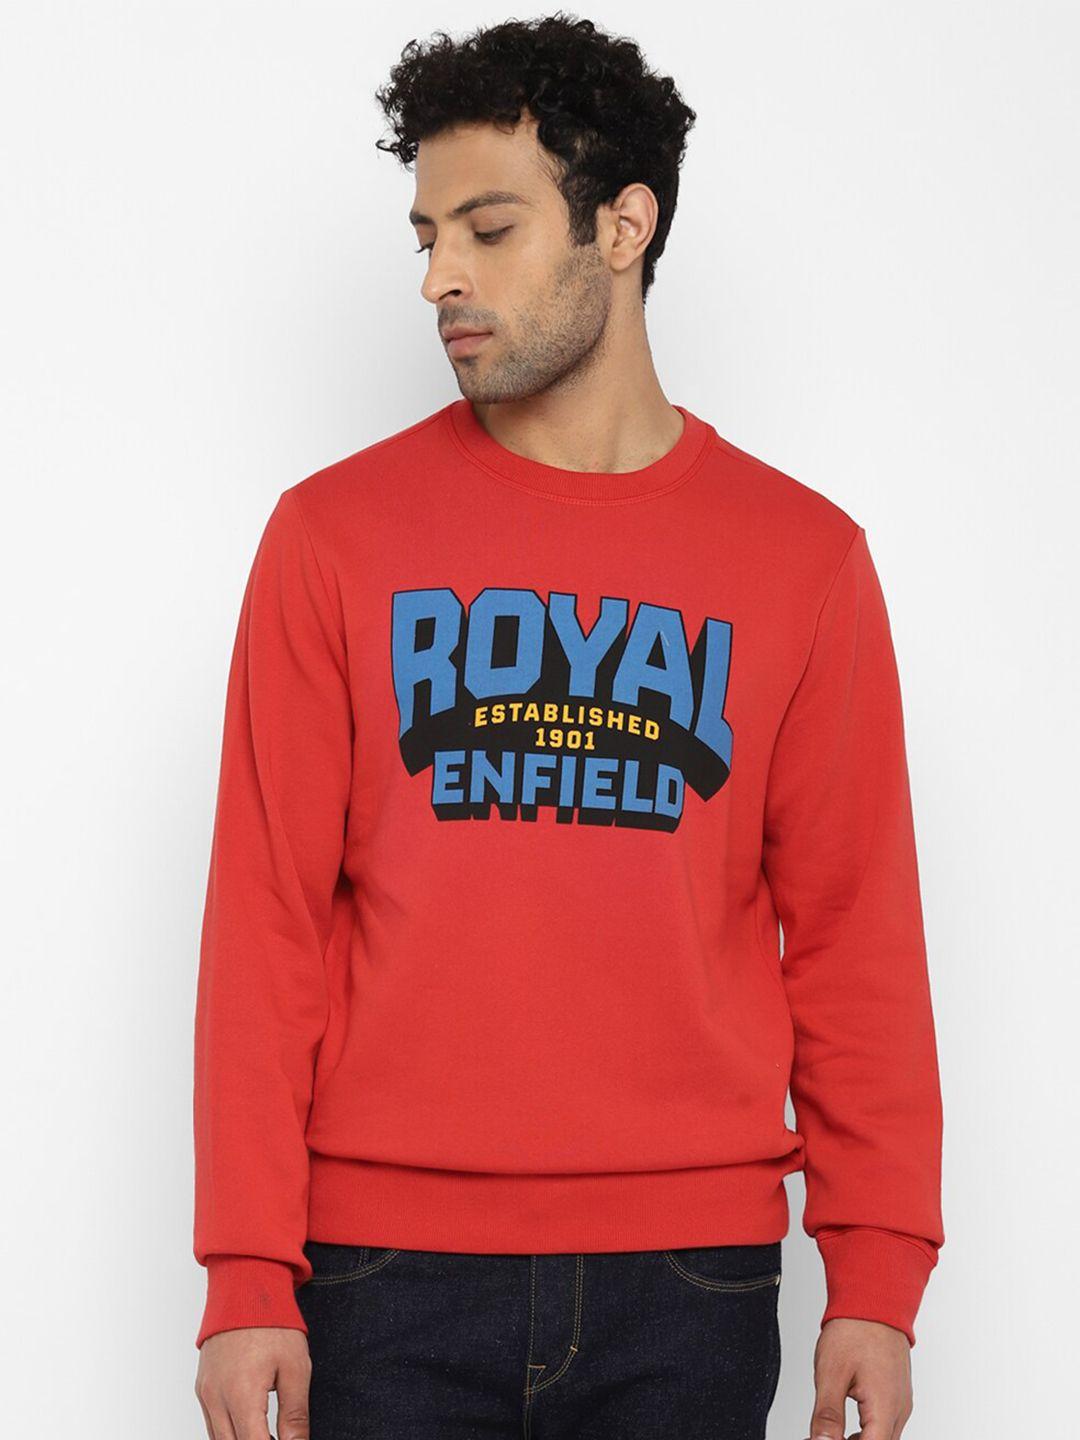 royal-enfield-men-red-printed-sweatshirt